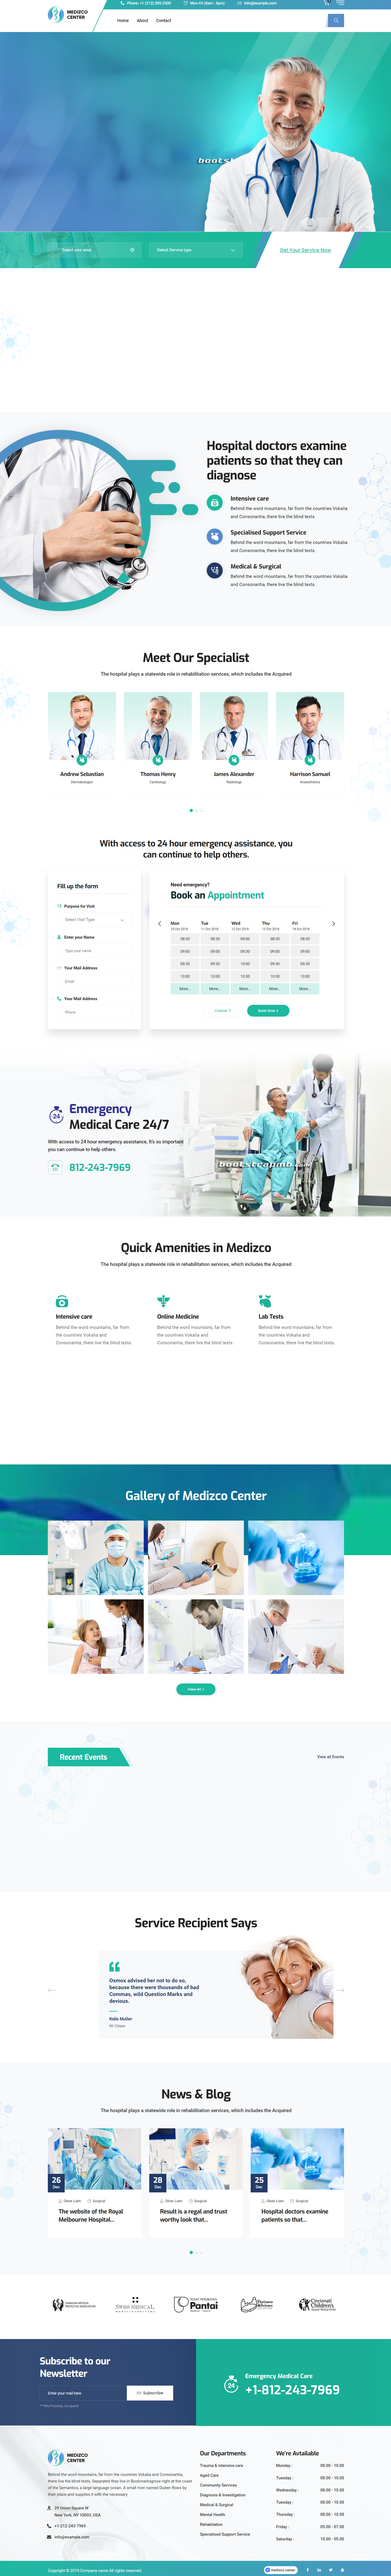 bootstrap绿色宽屏样式医疗健康康复企业网站模板代码下载